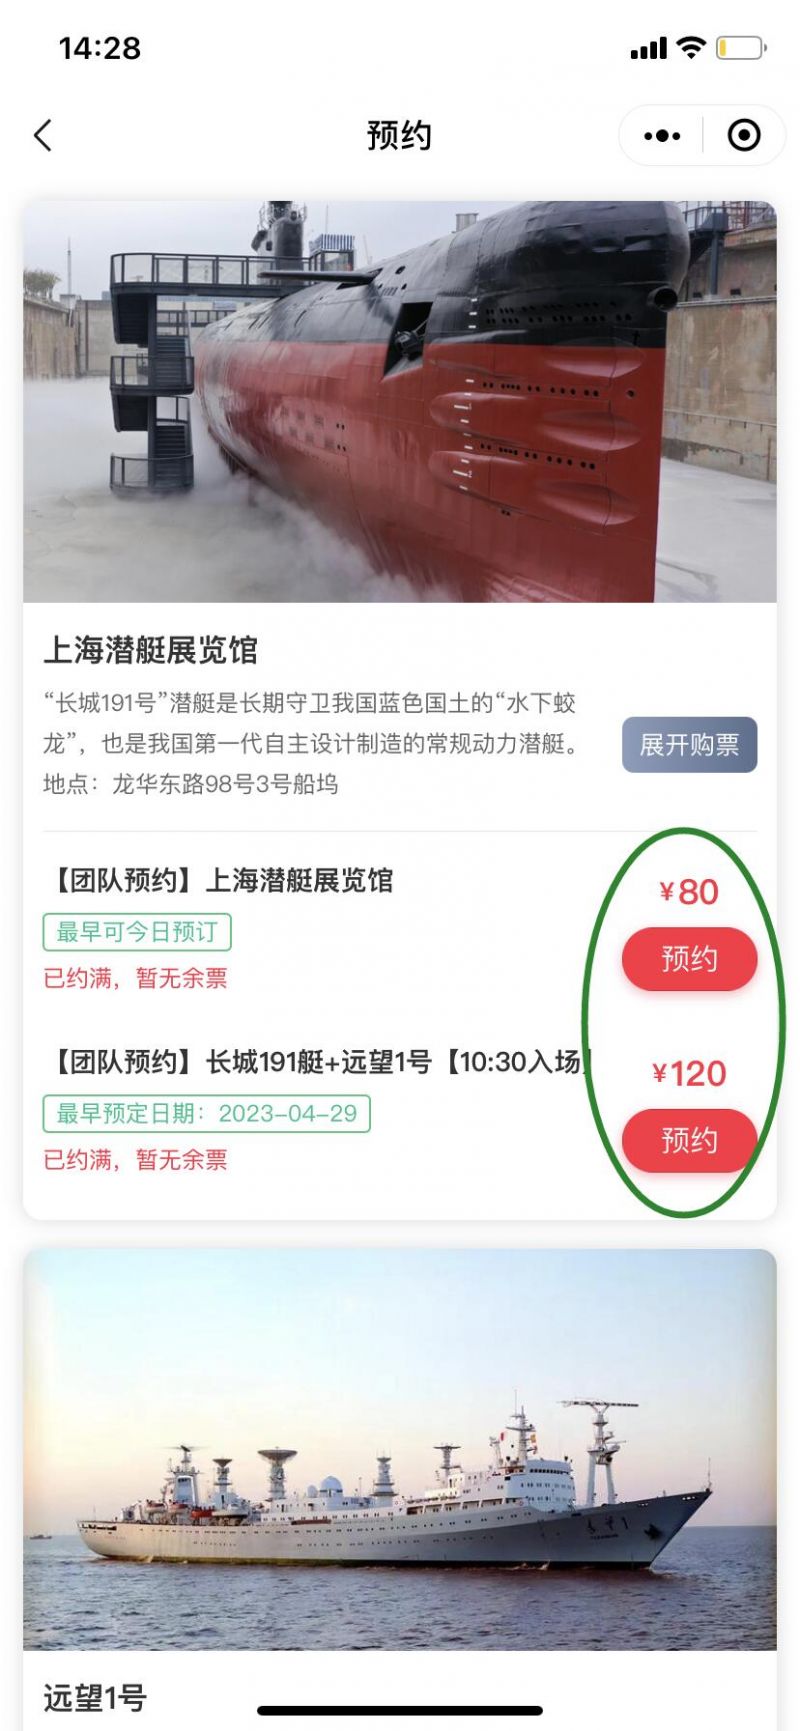 上海潜艇展览馆要预约吗(附预约入口)